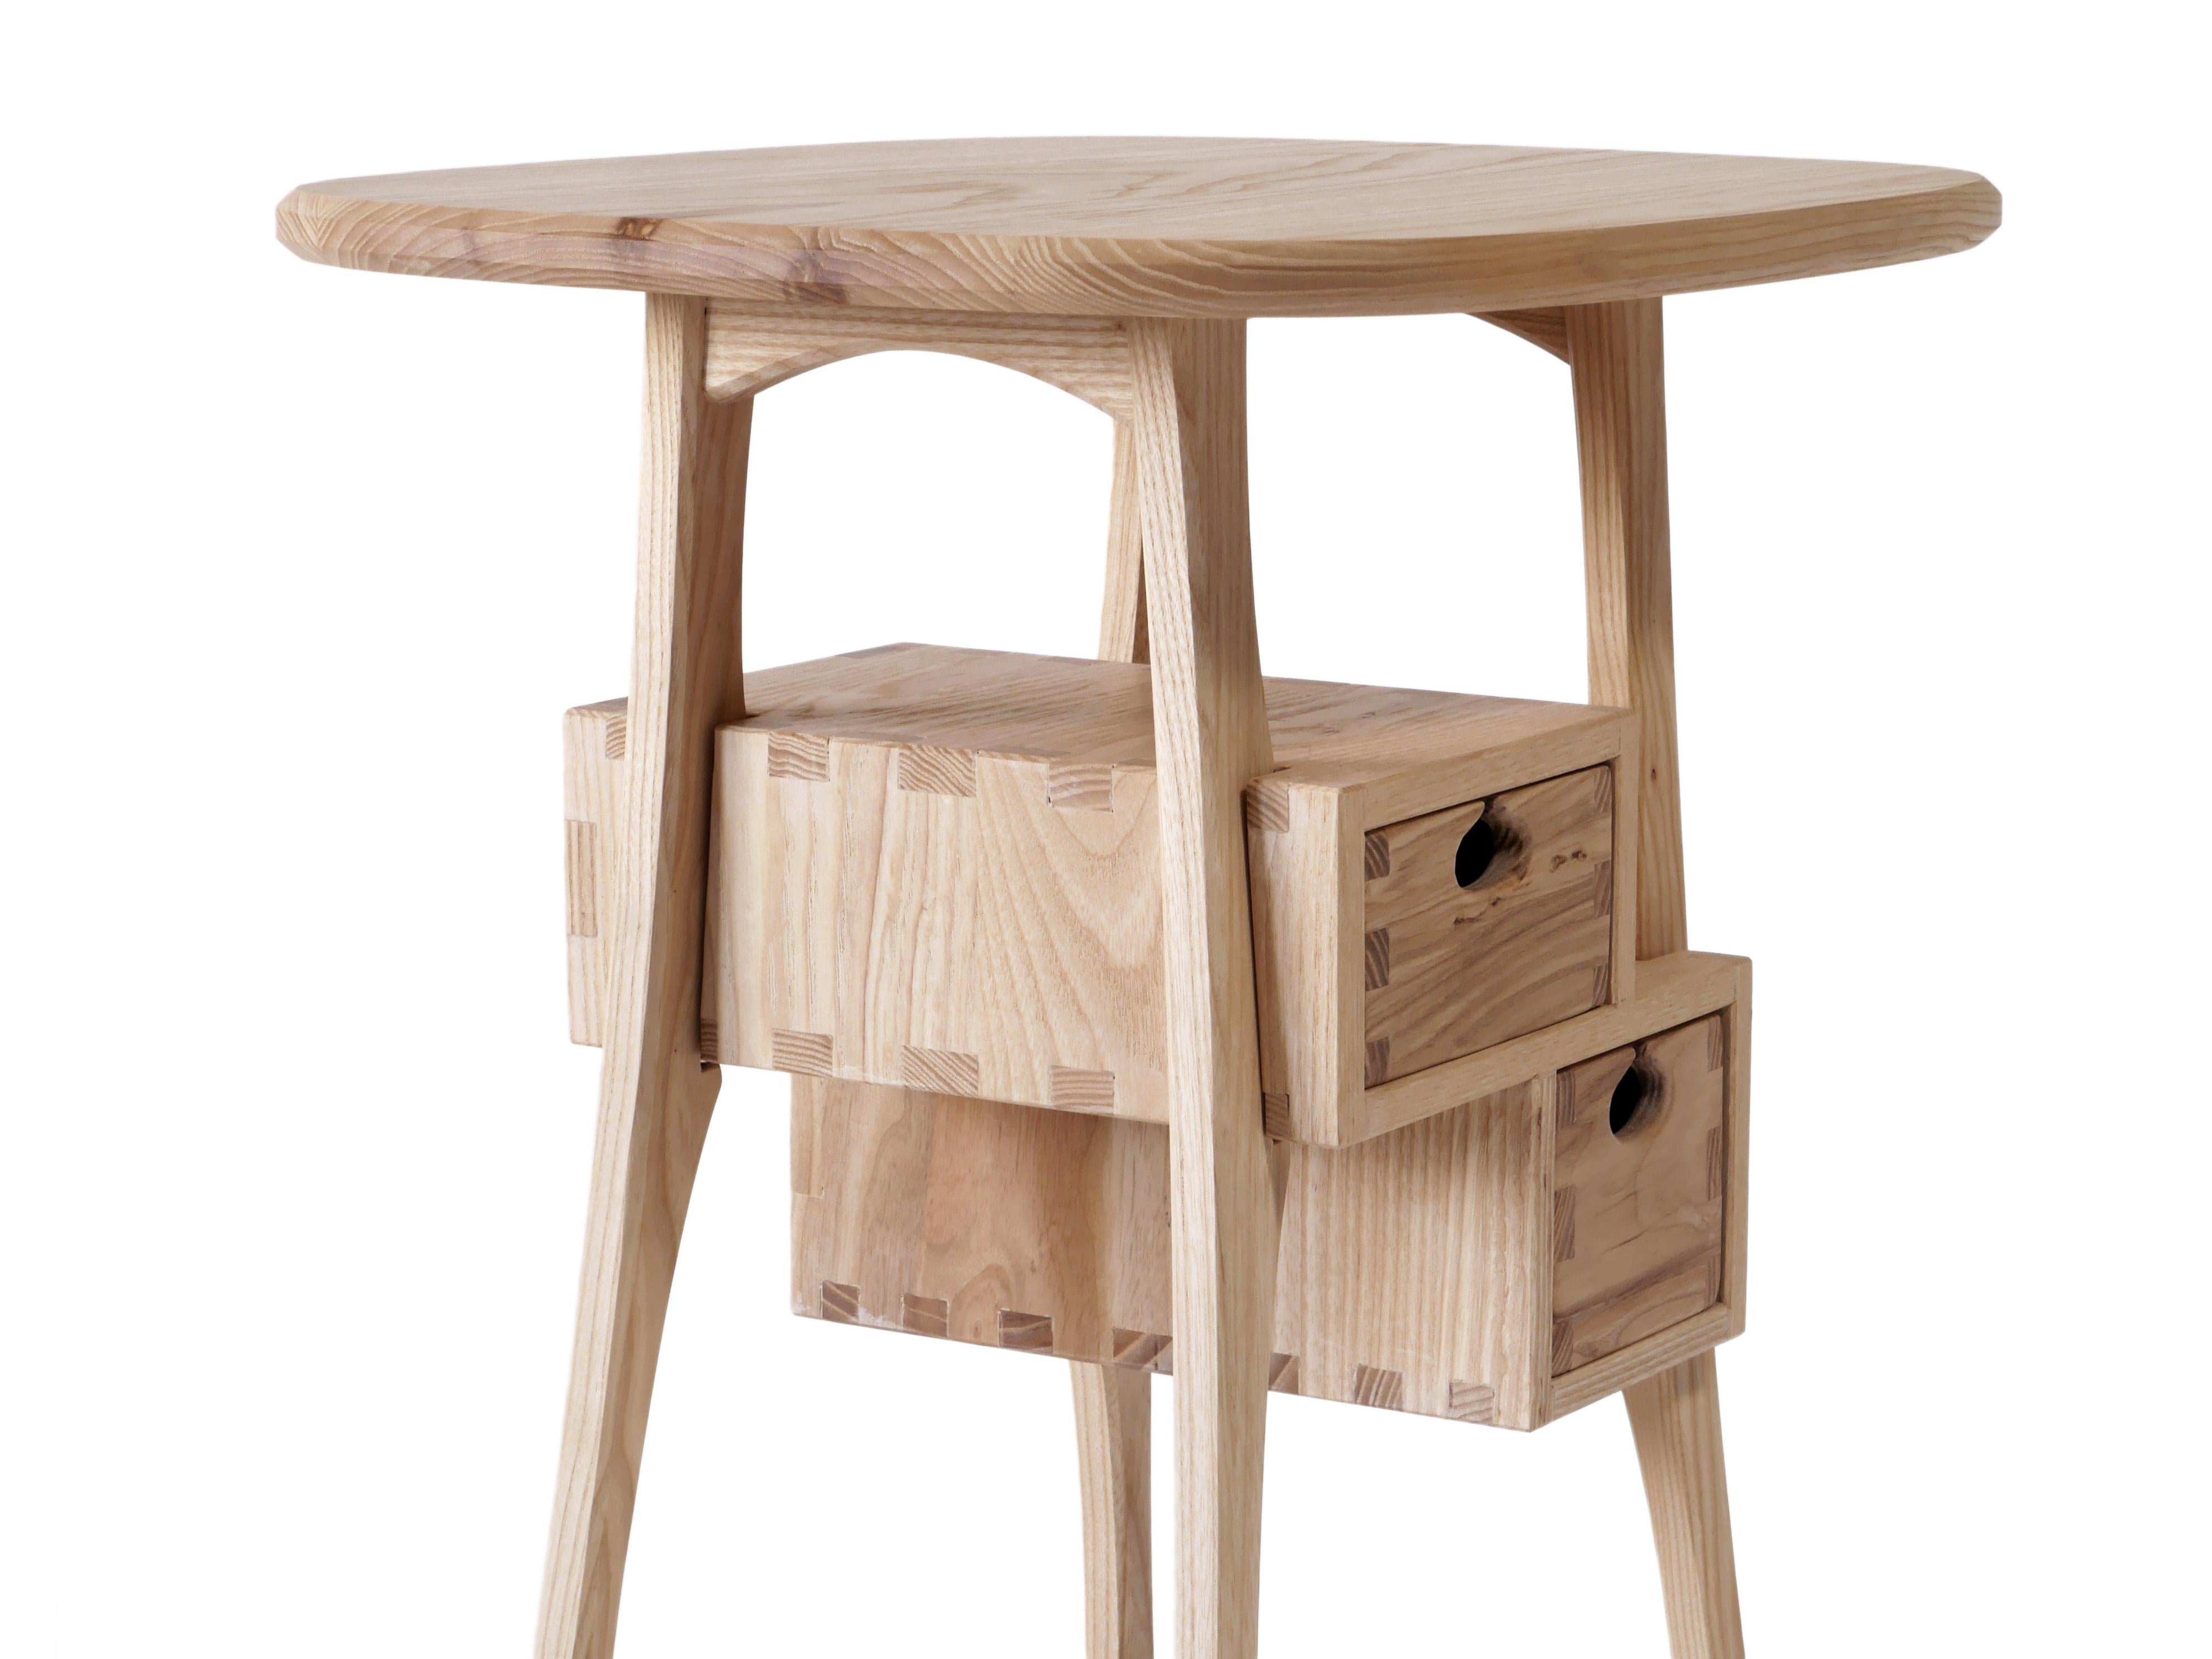 Nous en avons un en stock, disponible à l'expédition.

La table d'appoint Haar, très ludique, est fabriquée en frêne blanc massif et comporte deux tiroirs montés sur des glissières en bois dans des boîtes à tiroirs traditionnelles. Il est construit